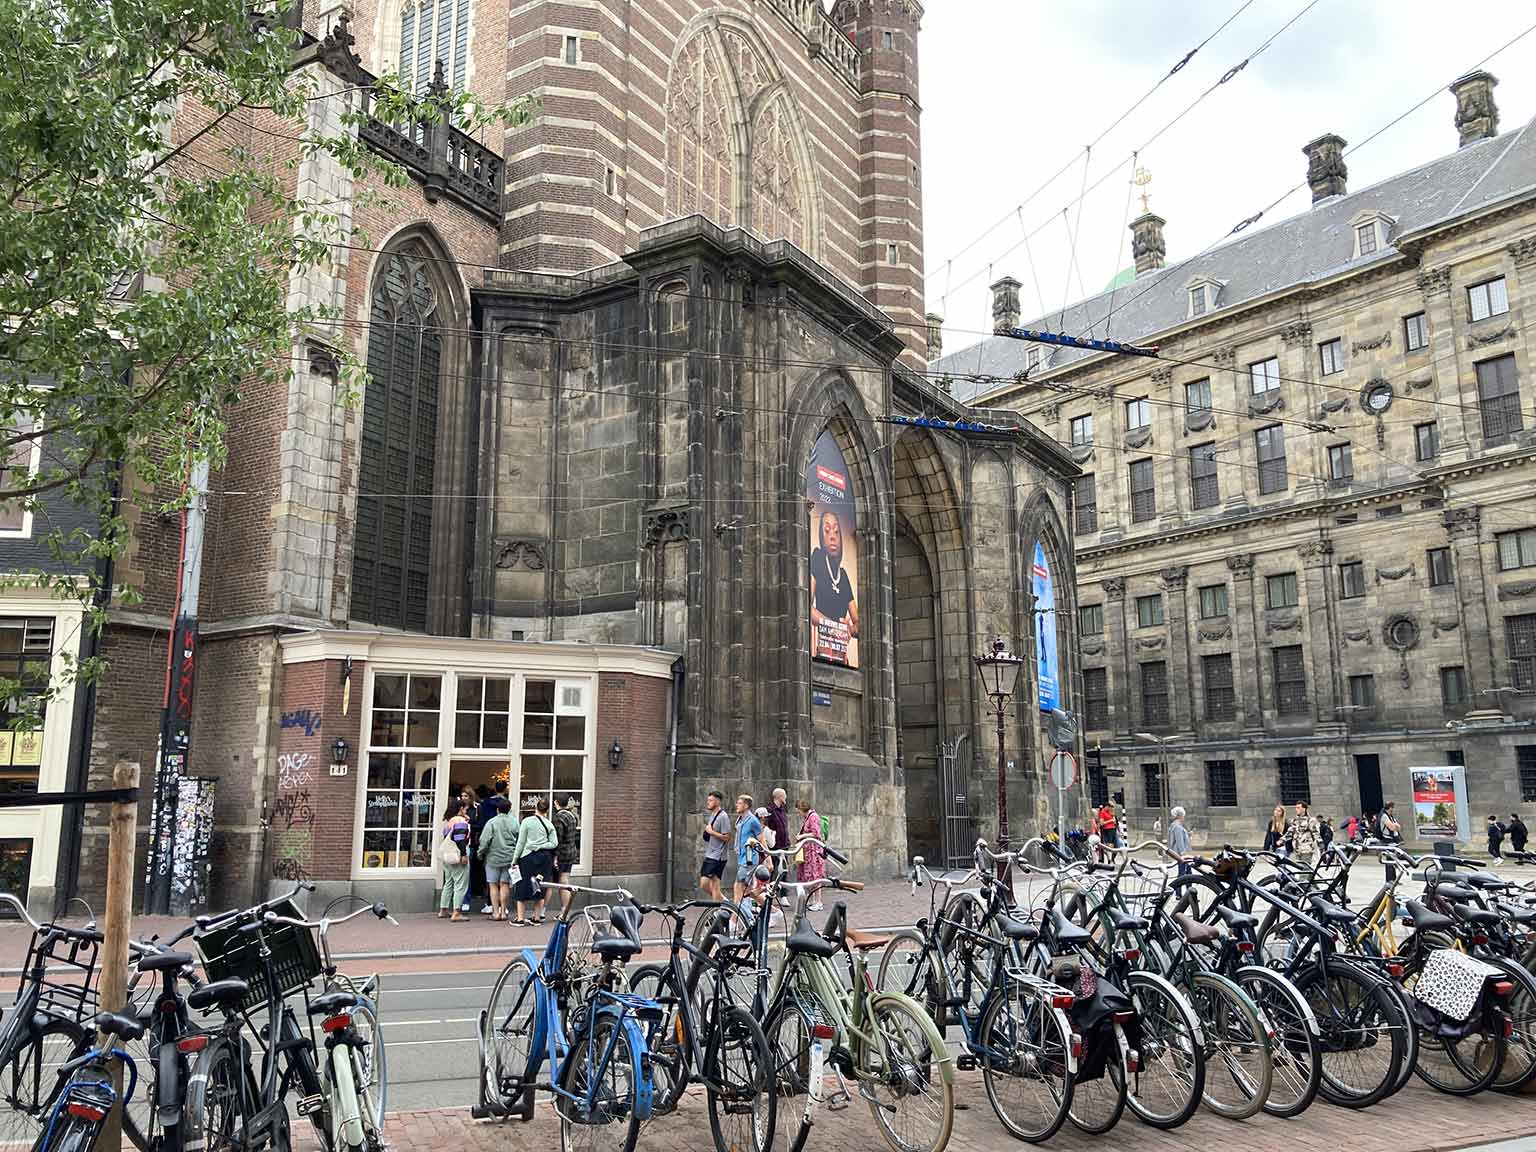 Entrance of the Nieuwe Kerk, Amsterdam, on Nieuwezijds Voorburgwal